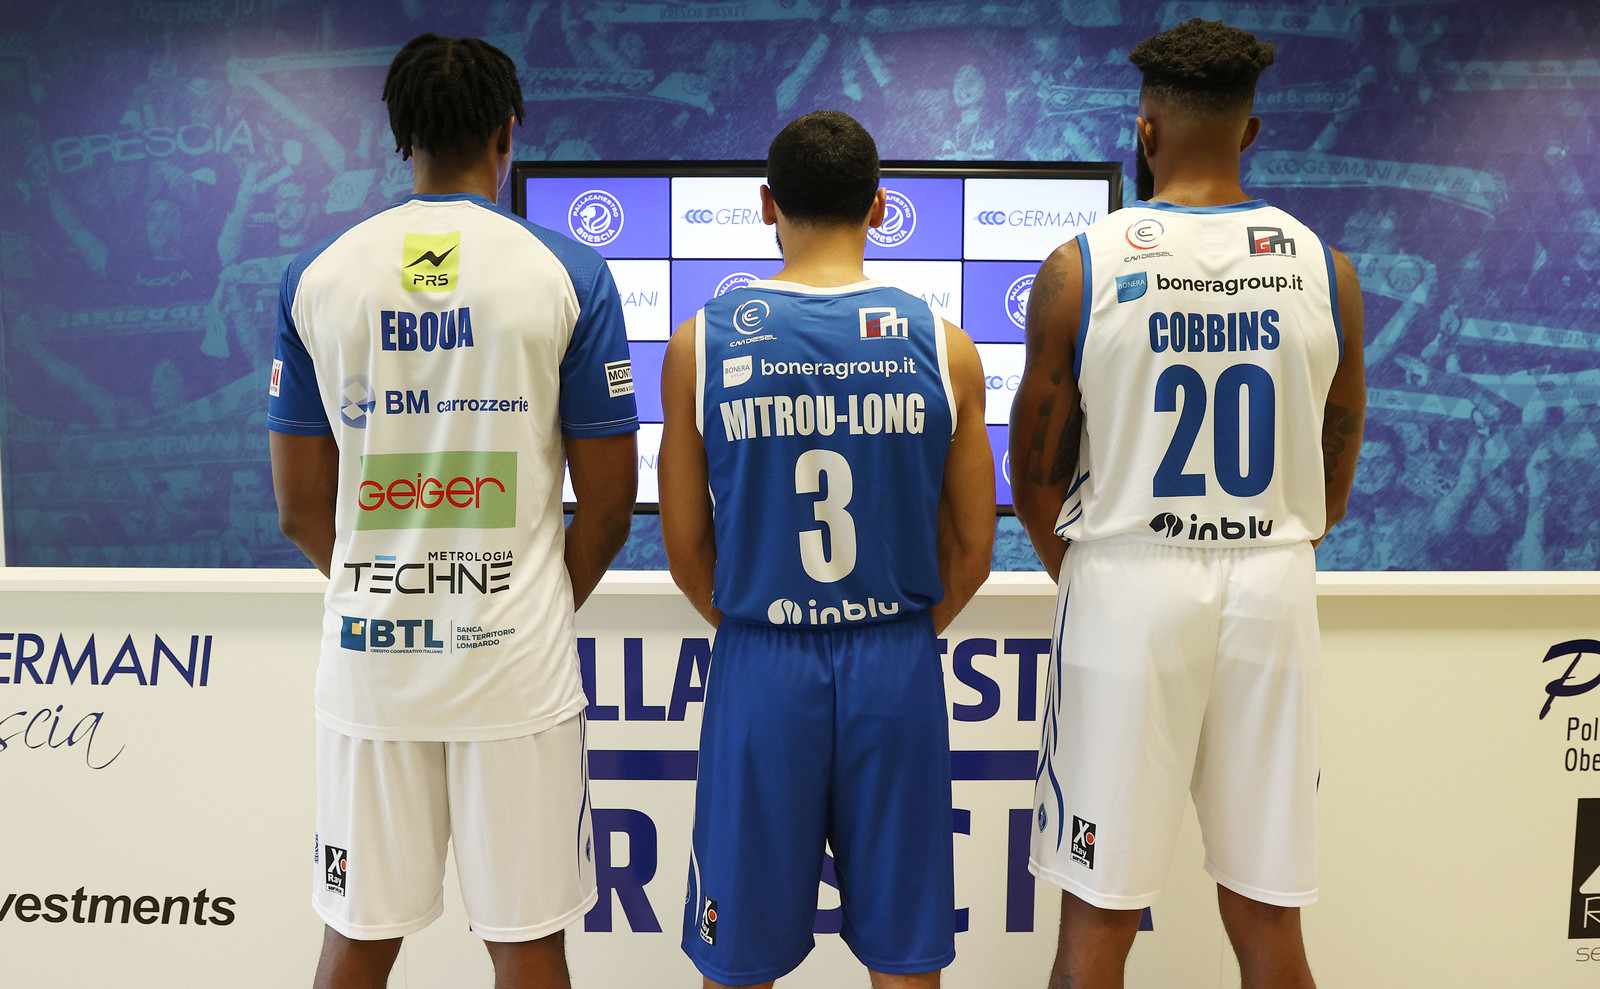 Le maglie del campionato Basket Brescia Leonessa